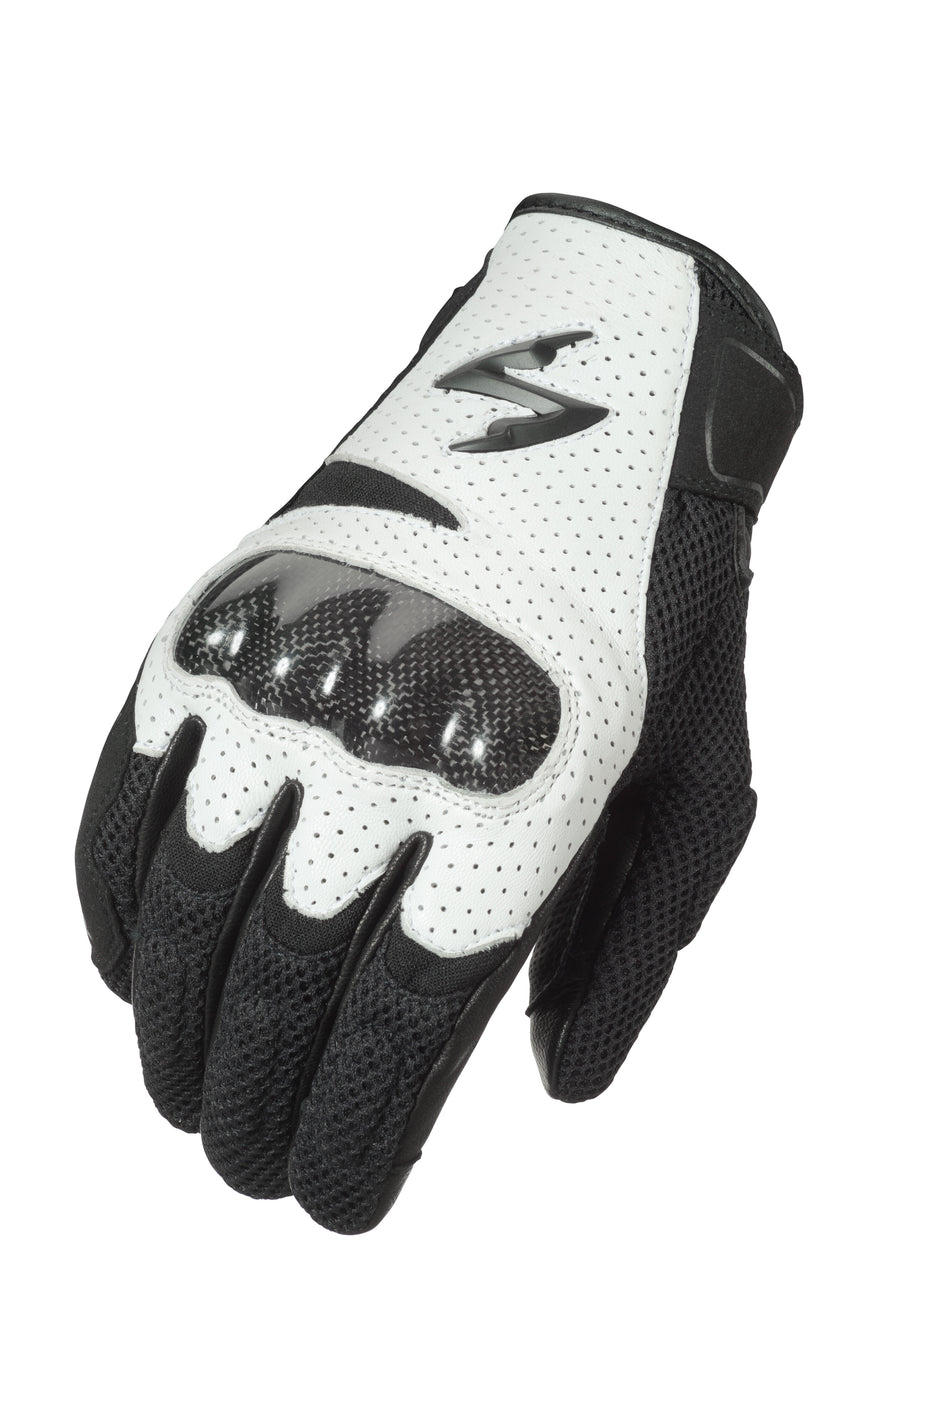 SCORPION EXO Vortex Air Gloves White Xl G36-056